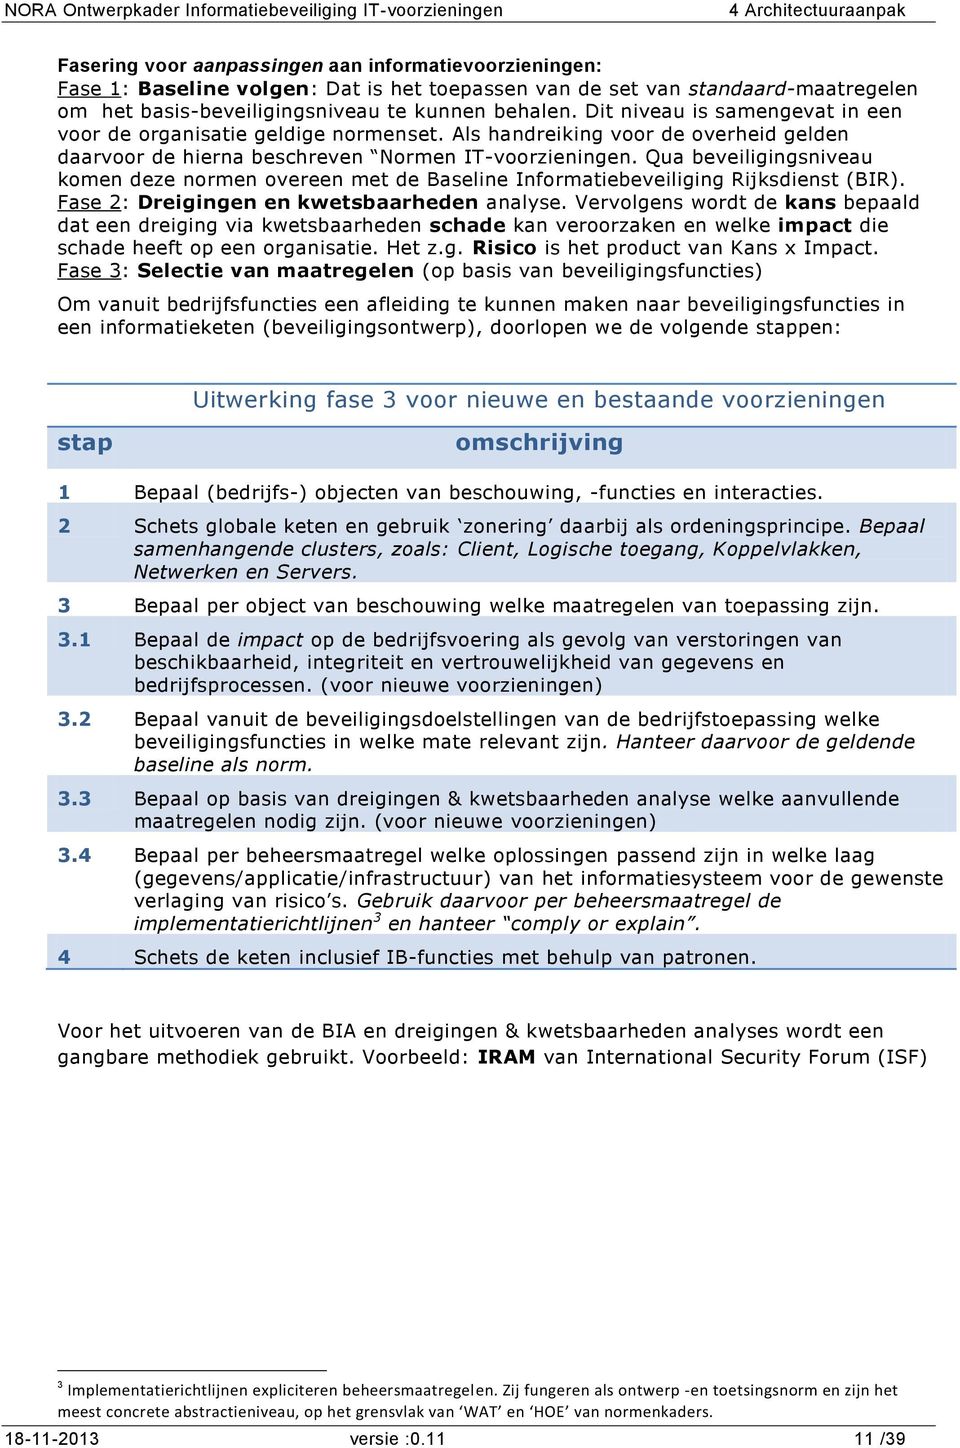 Qua beveiligingsniveau komen deze normen overeen met de Baseline Informatiebeveiliging Rijksdienst (BIR). Fase 2: Dreigingen en kwetsbaarheden analyse.